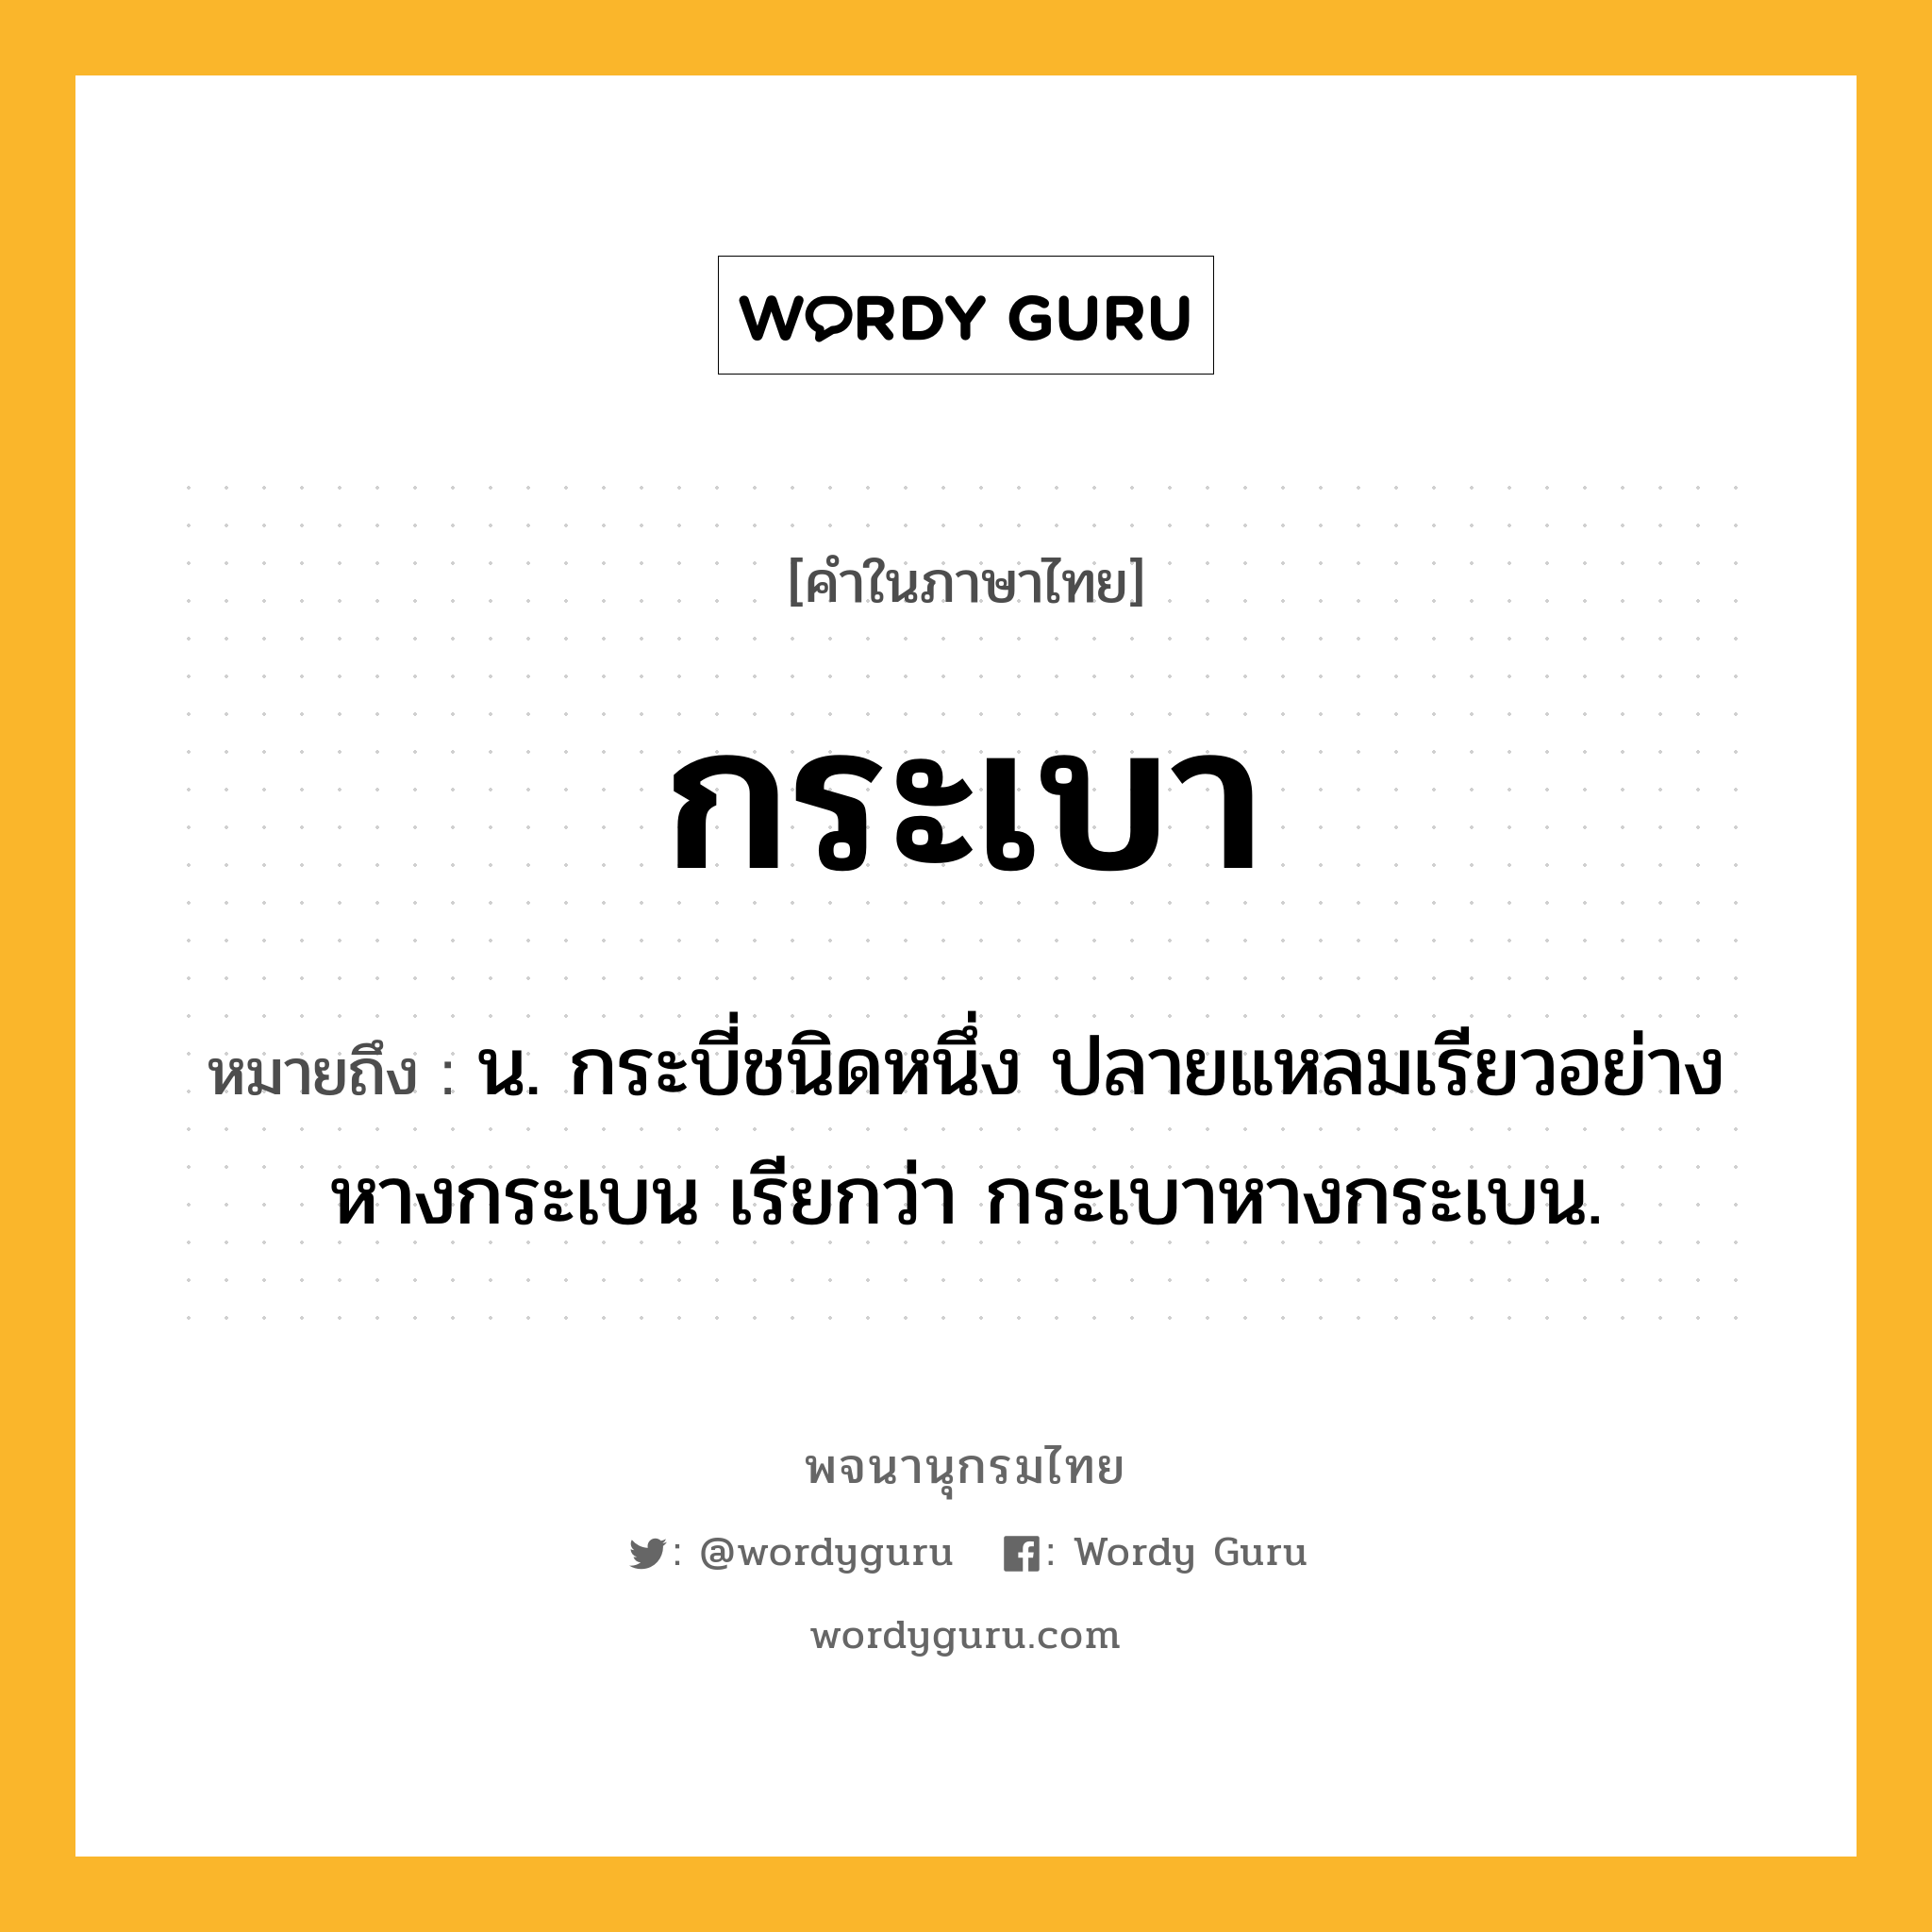 กระเบา หมายถึงอะไร?, คำในภาษาไทย กระเบา หมายถึง น. กระบี่ชนิดหนึ่ง ปลายแหลมเรียวอย่างหางกระเบน เรียกว่า กระเบาหางกระเบน.